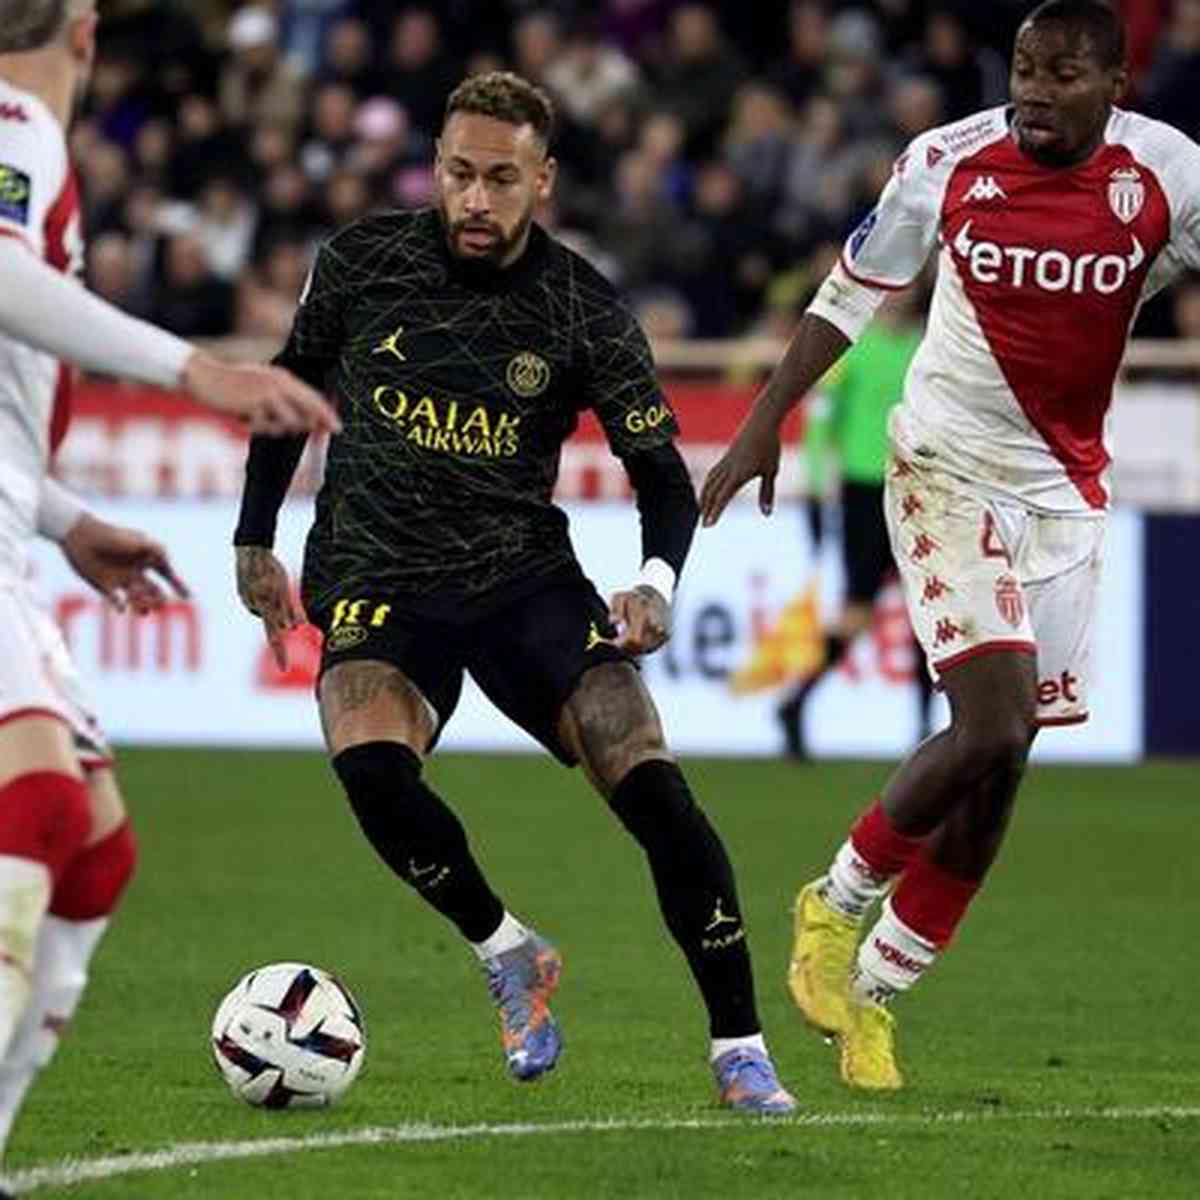 Neymar abre o jogo e fala sobre sua possível saída do PSG